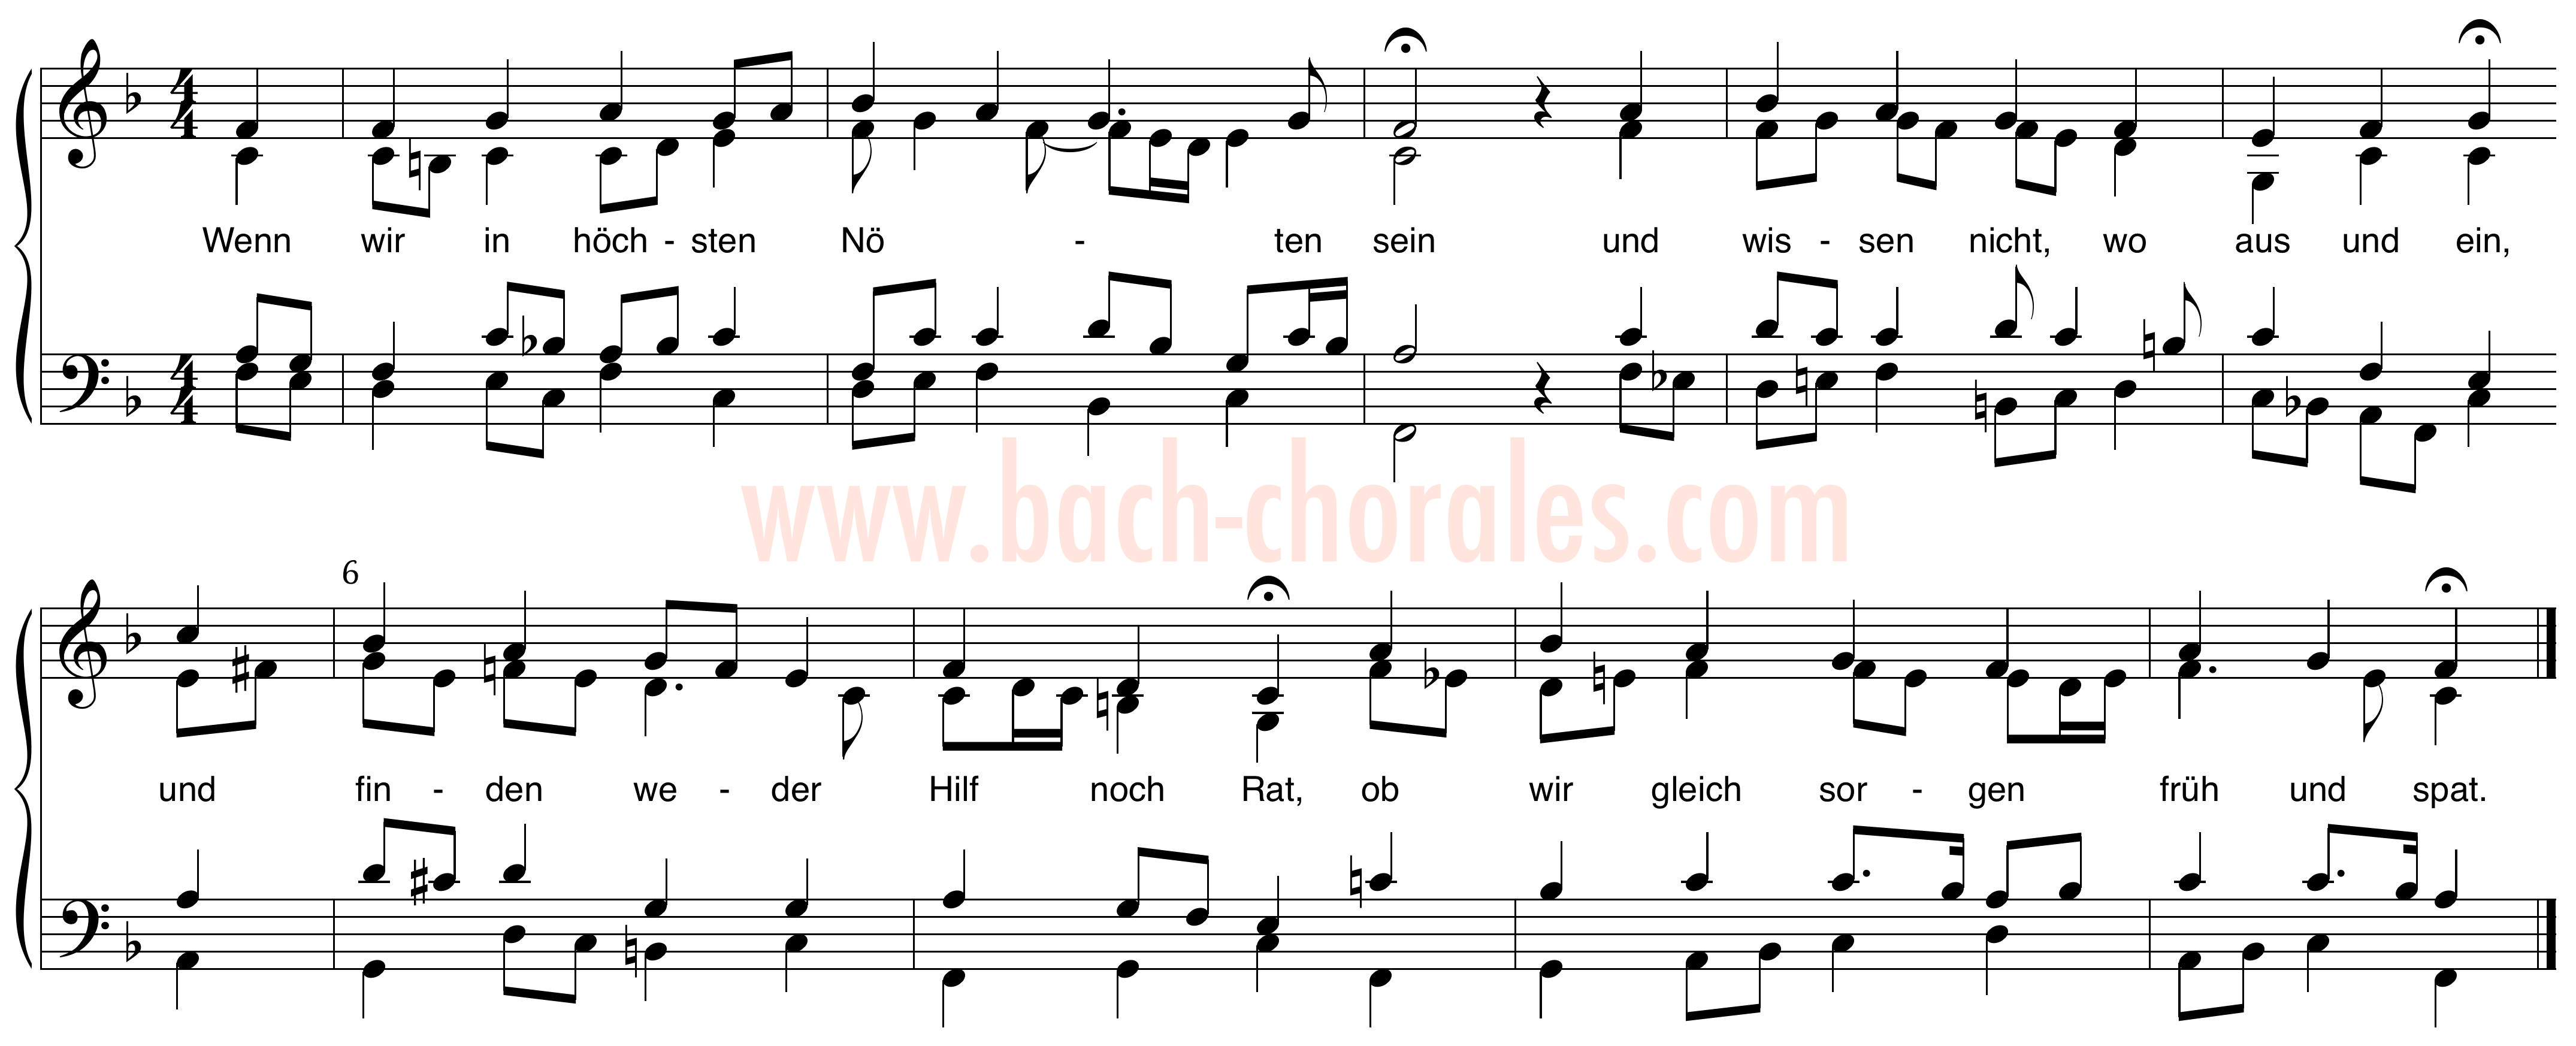 notenbeeld BWV 431 op https://www.bach-chorales.com/